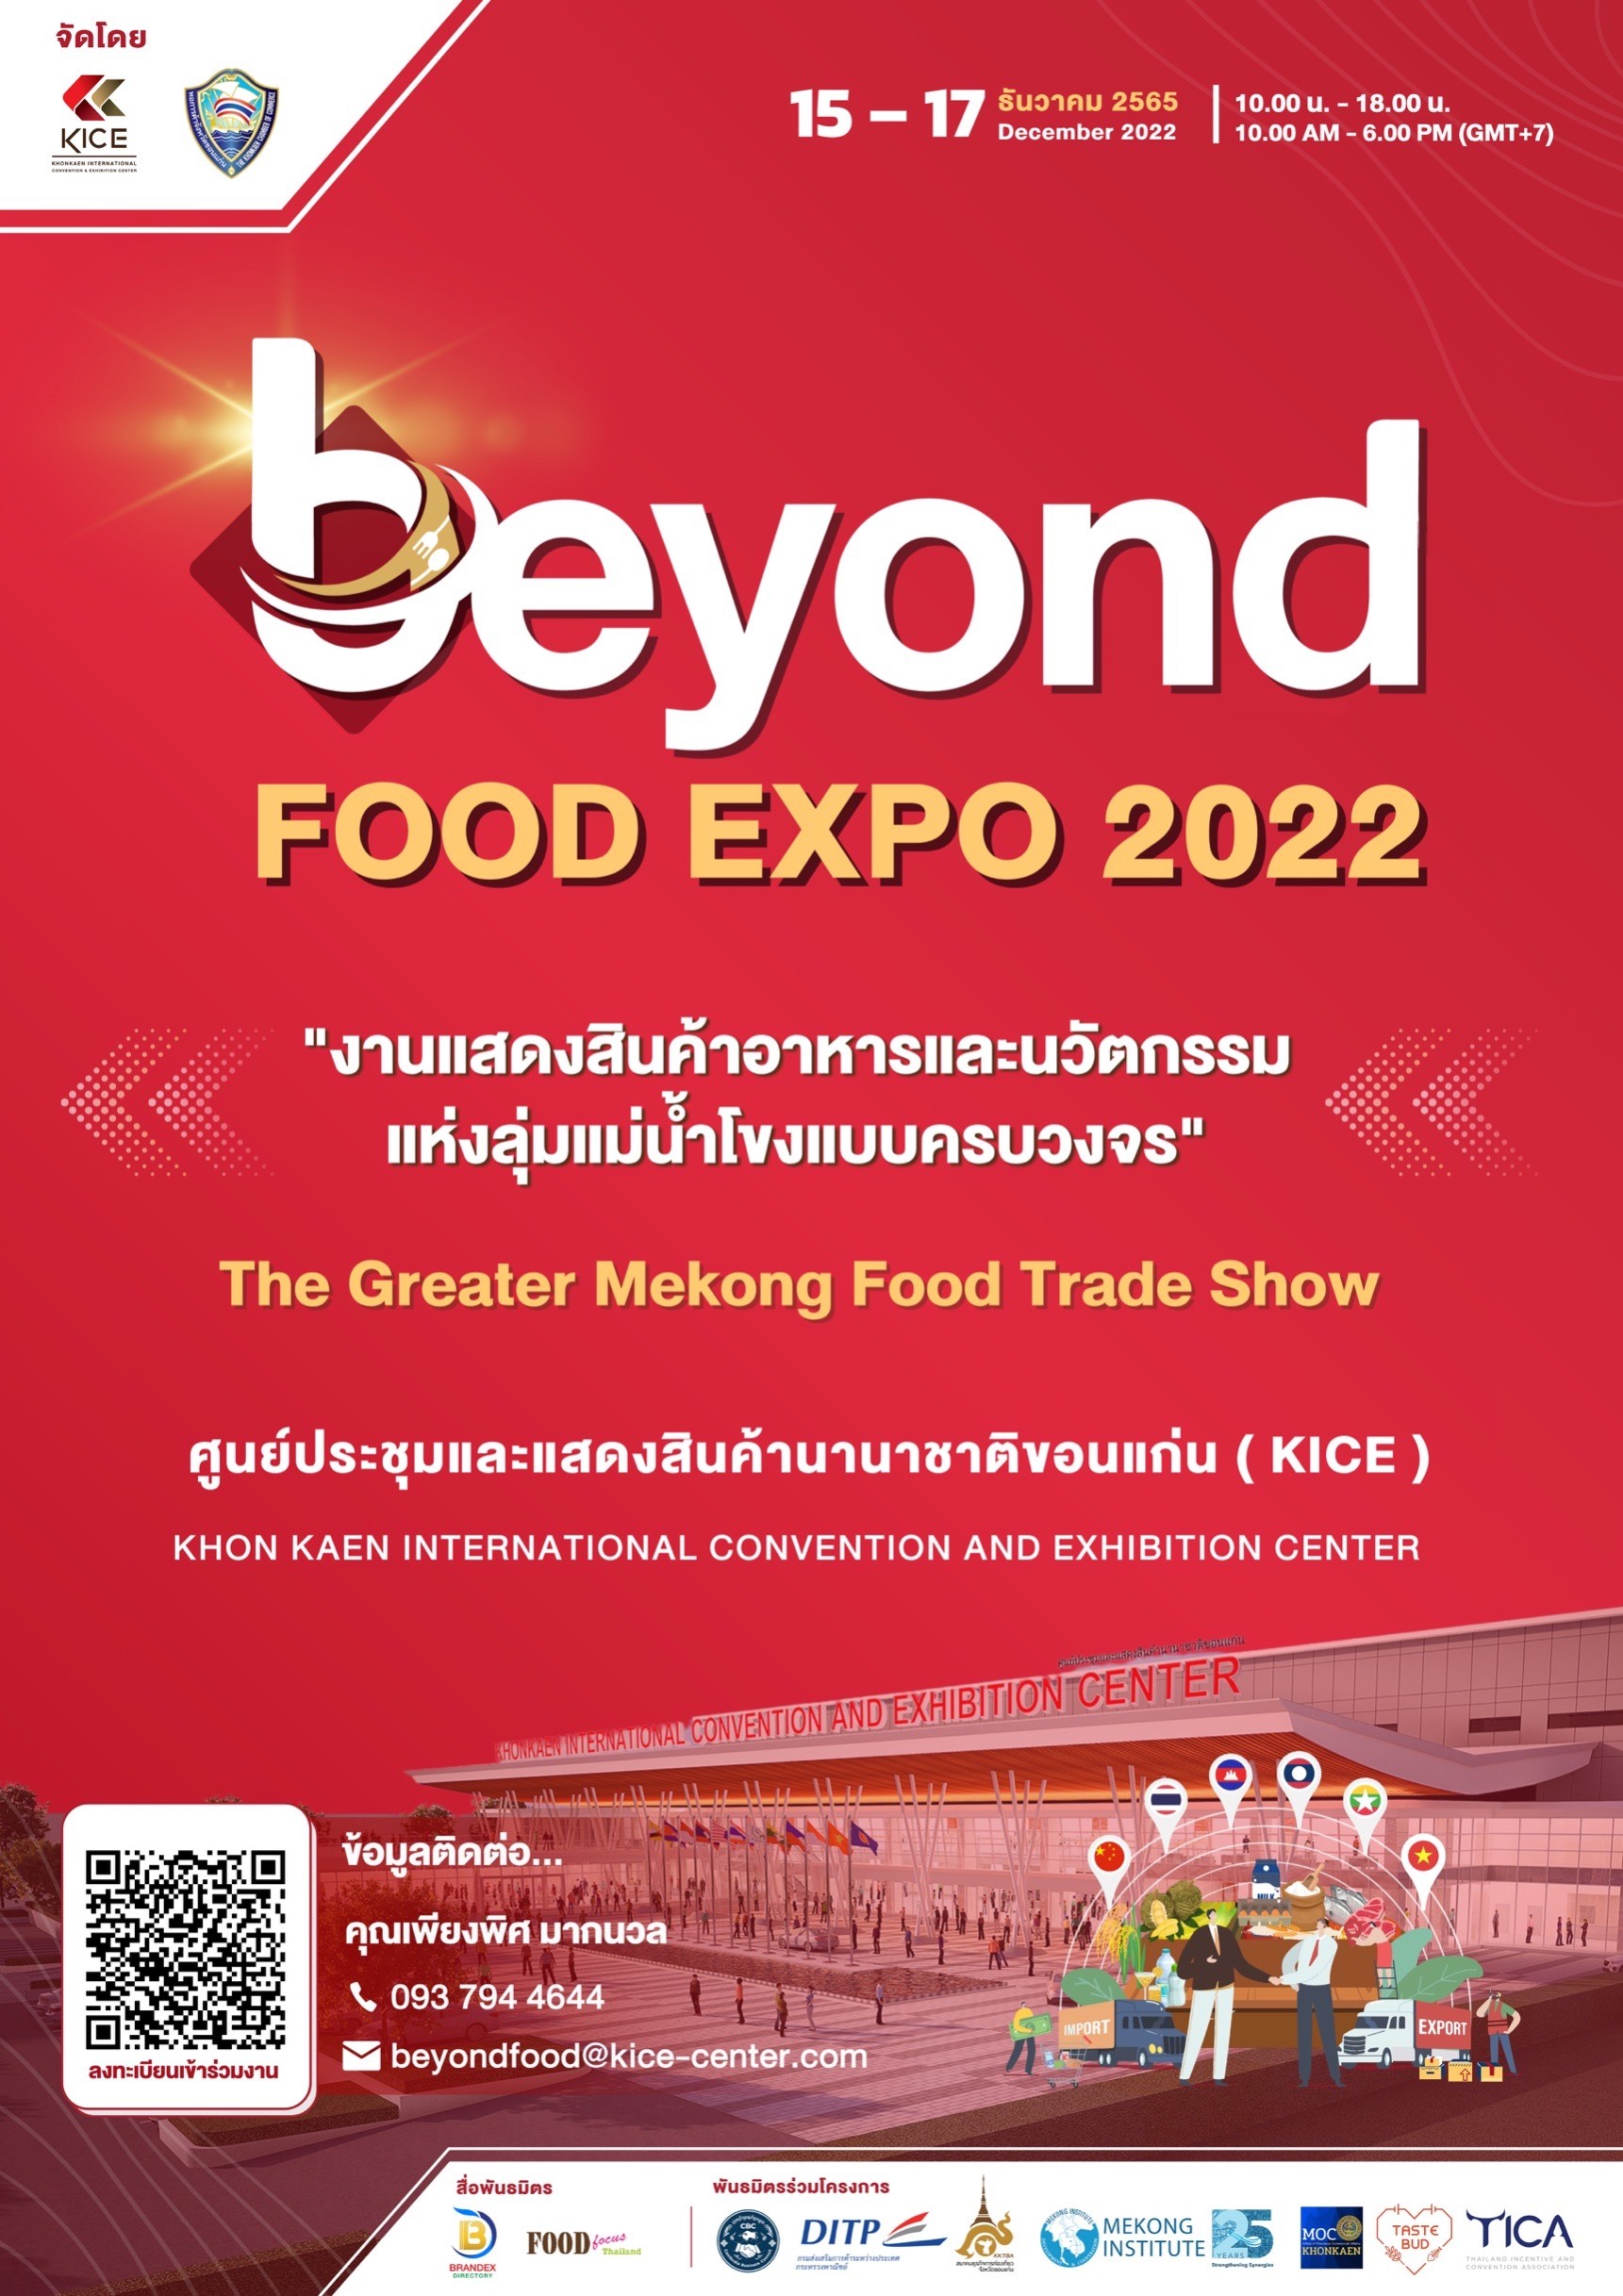 BEYOND FOOD EXPO 2022 